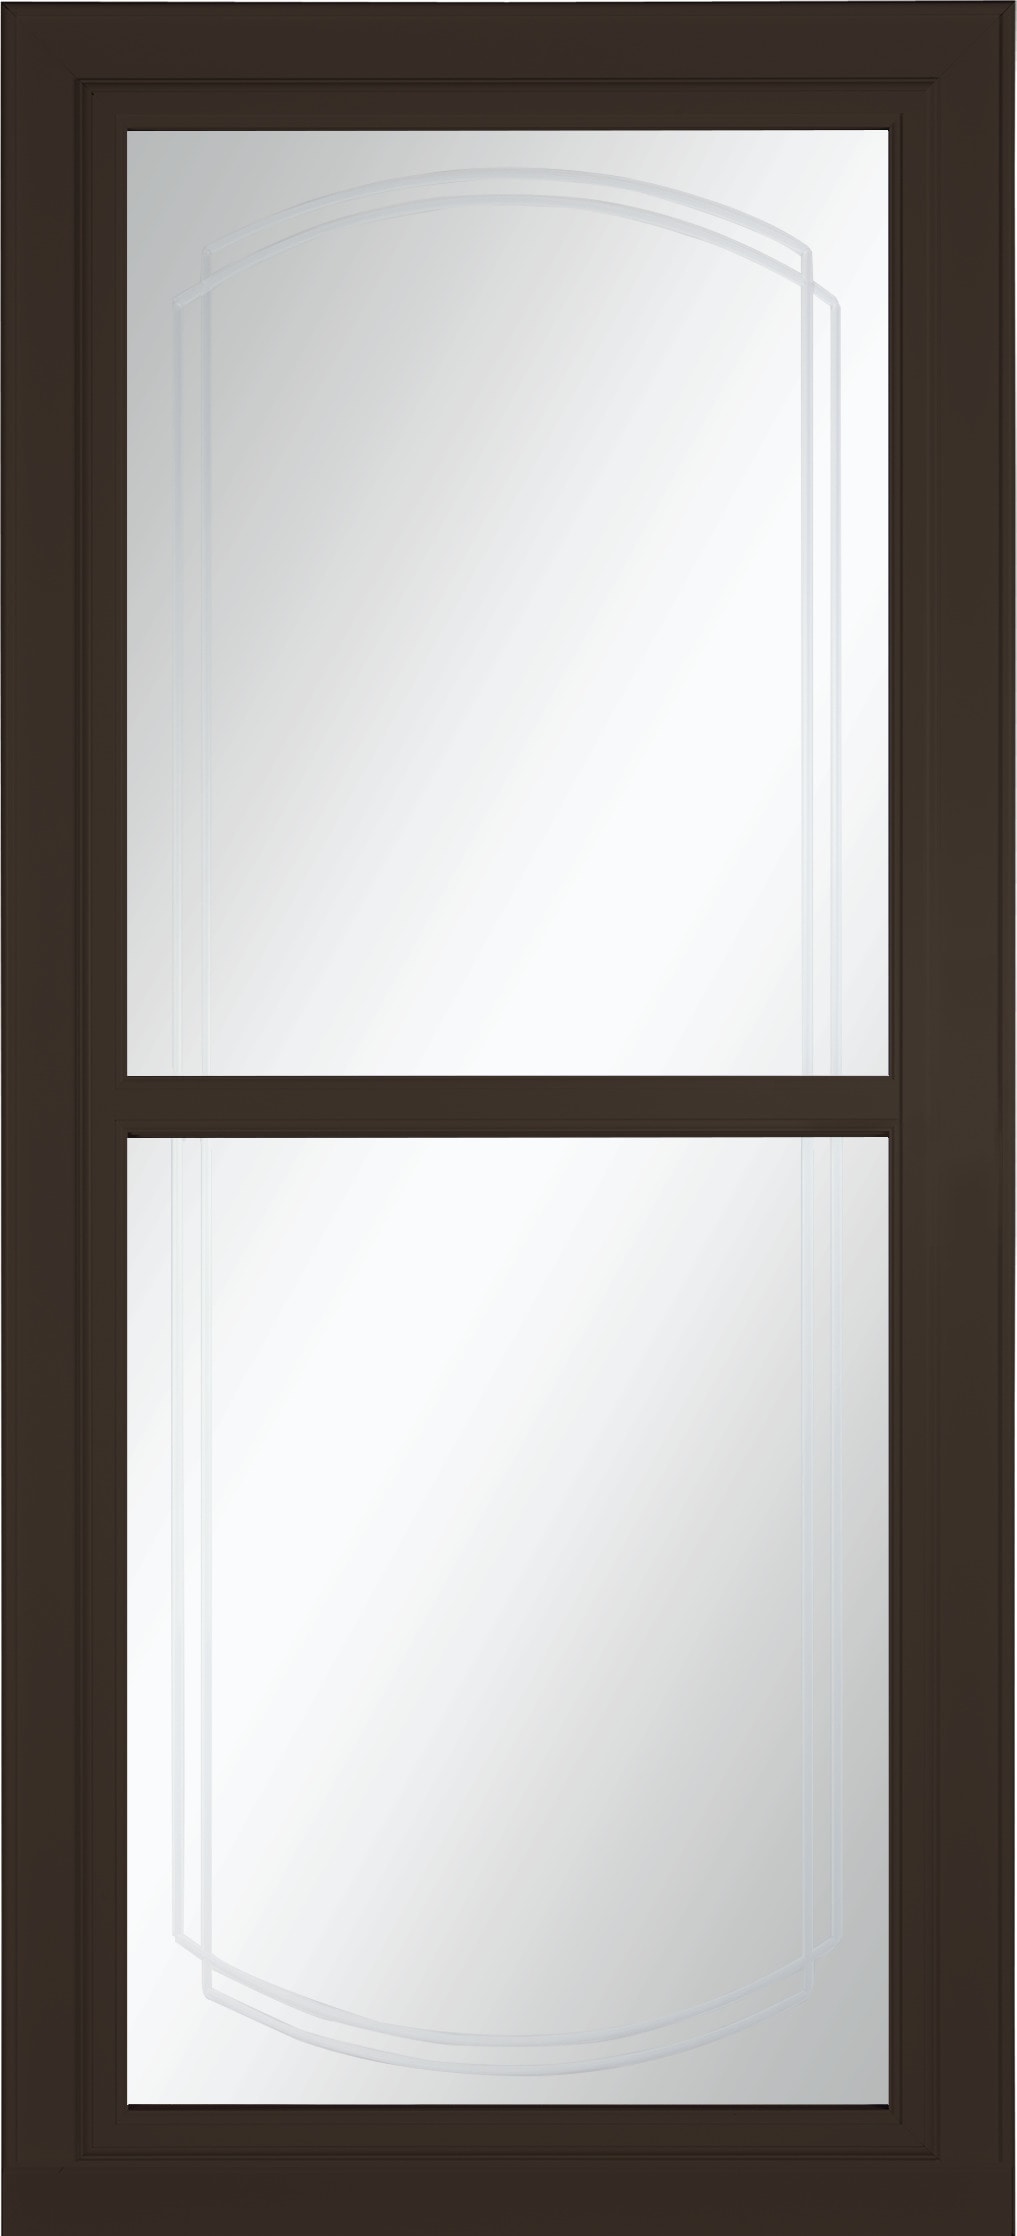 Tradewinds Selection 36-in x 81-in Elk Full-view Retractable Screen Aluminum Storm Door in Brown | - LARSON 14614042